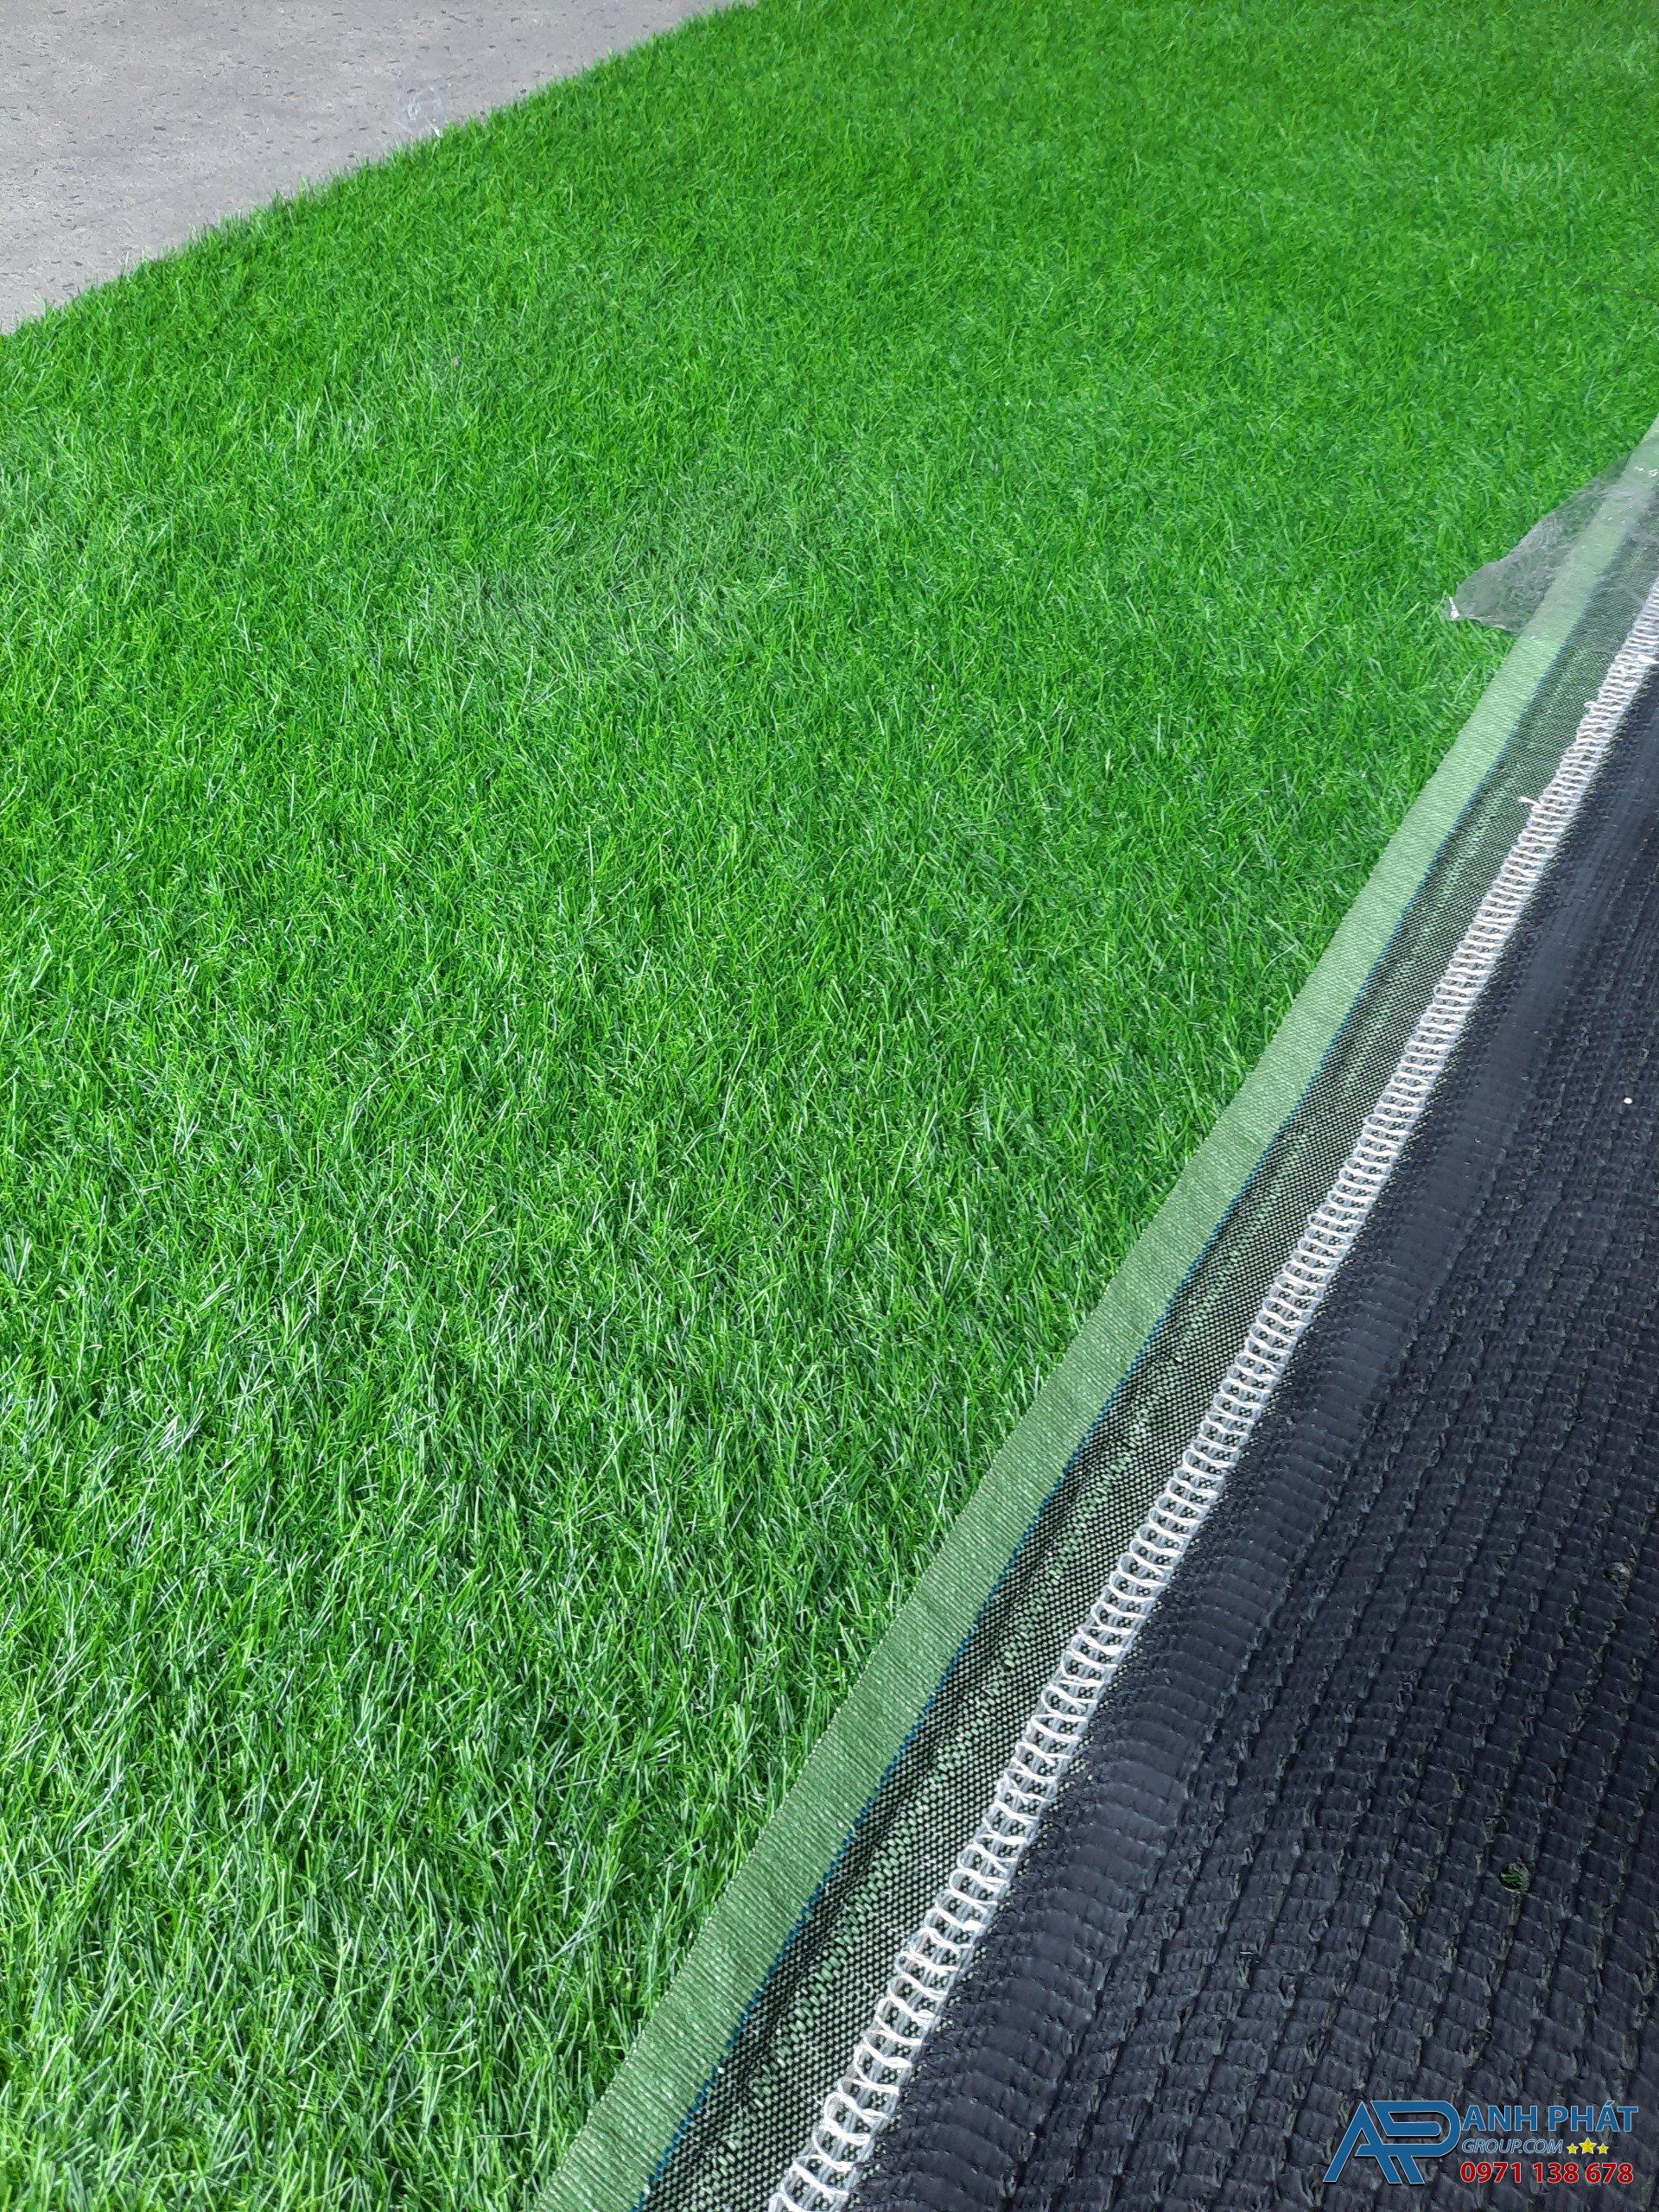 Hiện nay các thảm cỏ nhân tạo cũng được tô điểm những sắc màu đậm nhạt đẹp mắt.